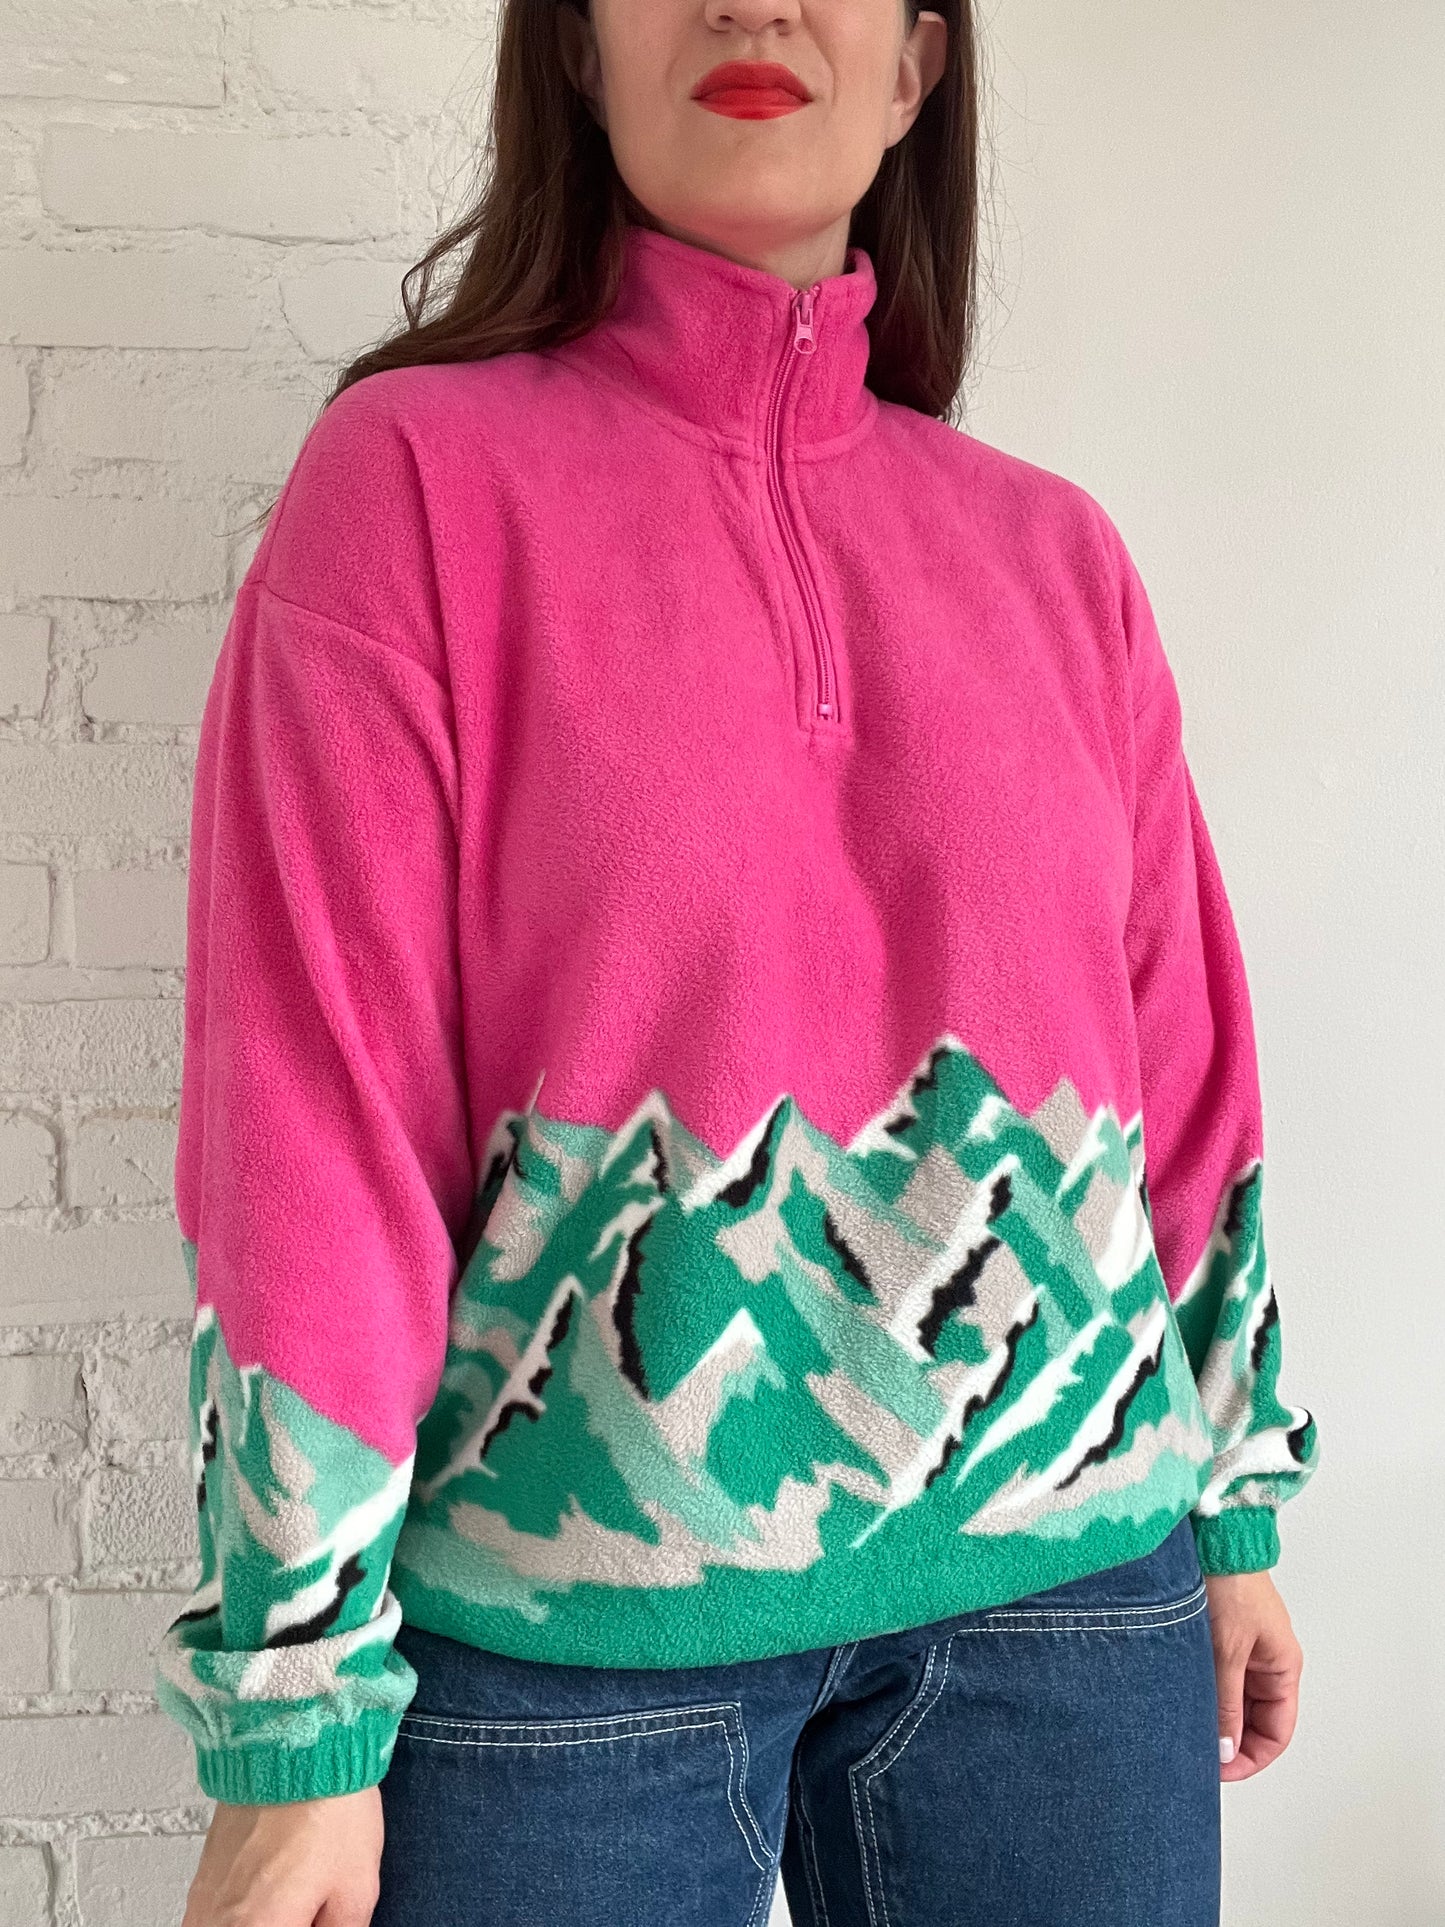 Hot Pink Emerald Mountains Fleece - M/L